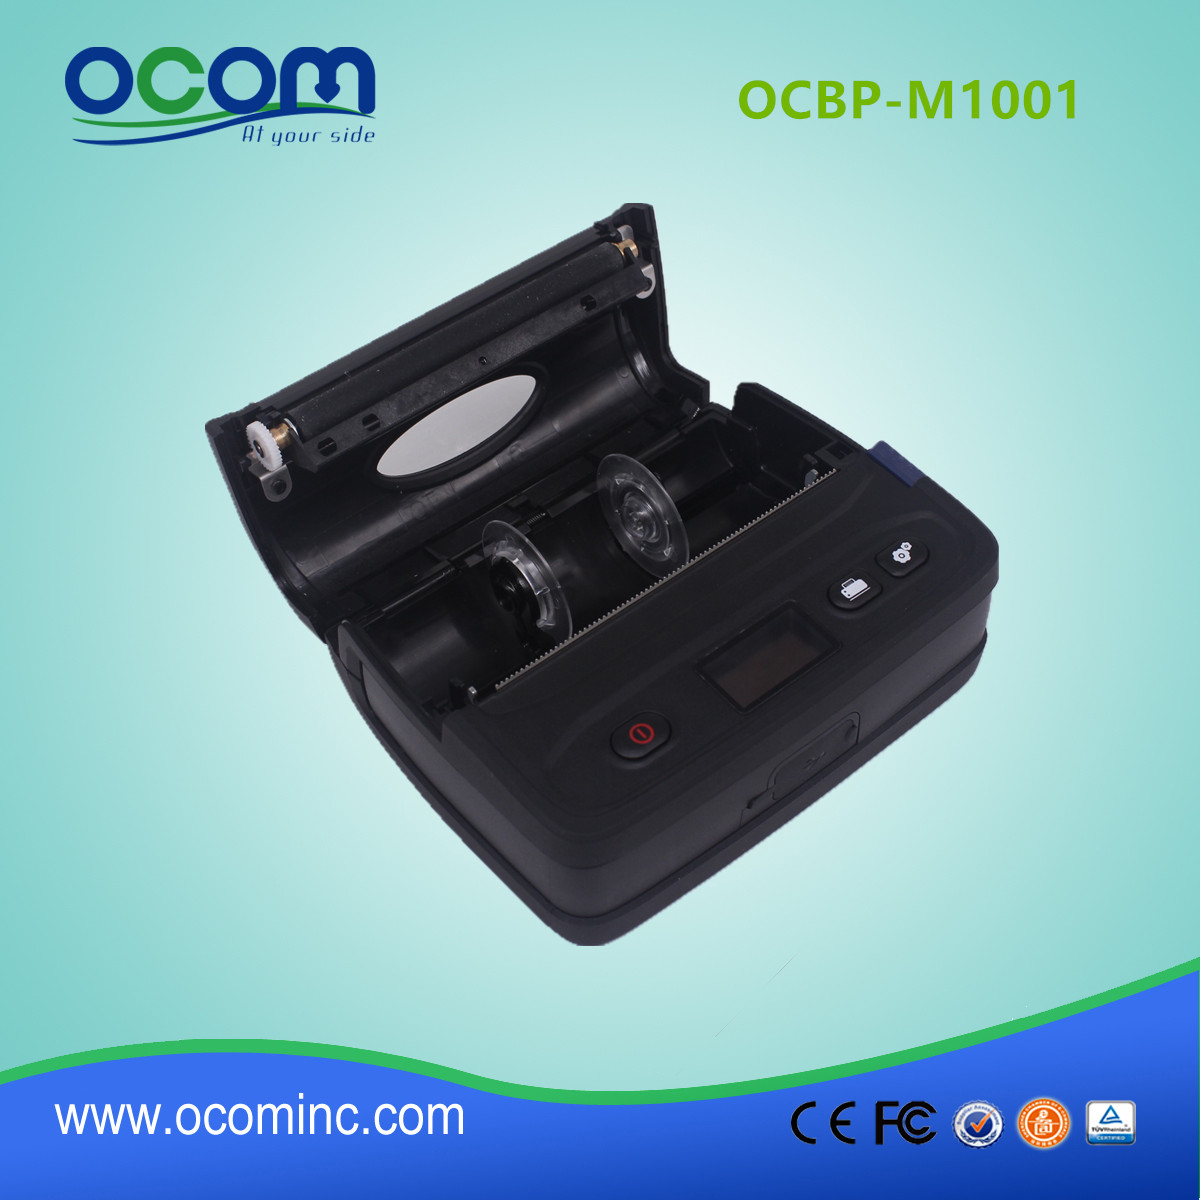 4“便携式蓝牙热敏条码标签打印机 -  OCBP-M1001